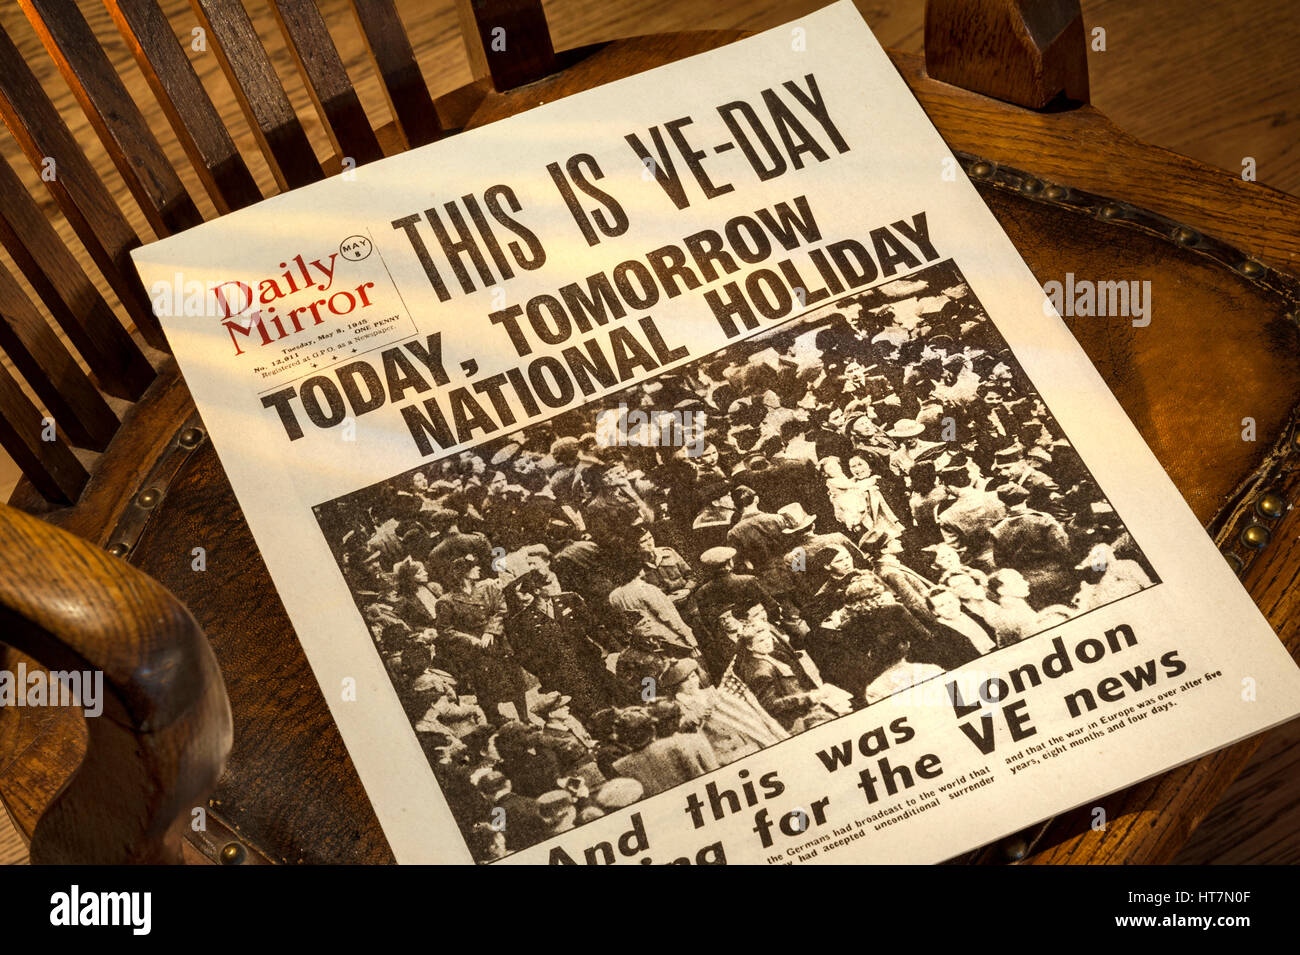 VE TAG GROSSBRITANNIEN SCHLAGZEILEN historische Daily Mirror Zeitung Schlagzeile "Dies ist VE Day" vom 8. Mai 1945 auf 1940 Holzstuhl mit Blick Fenster Licht Stockfoto